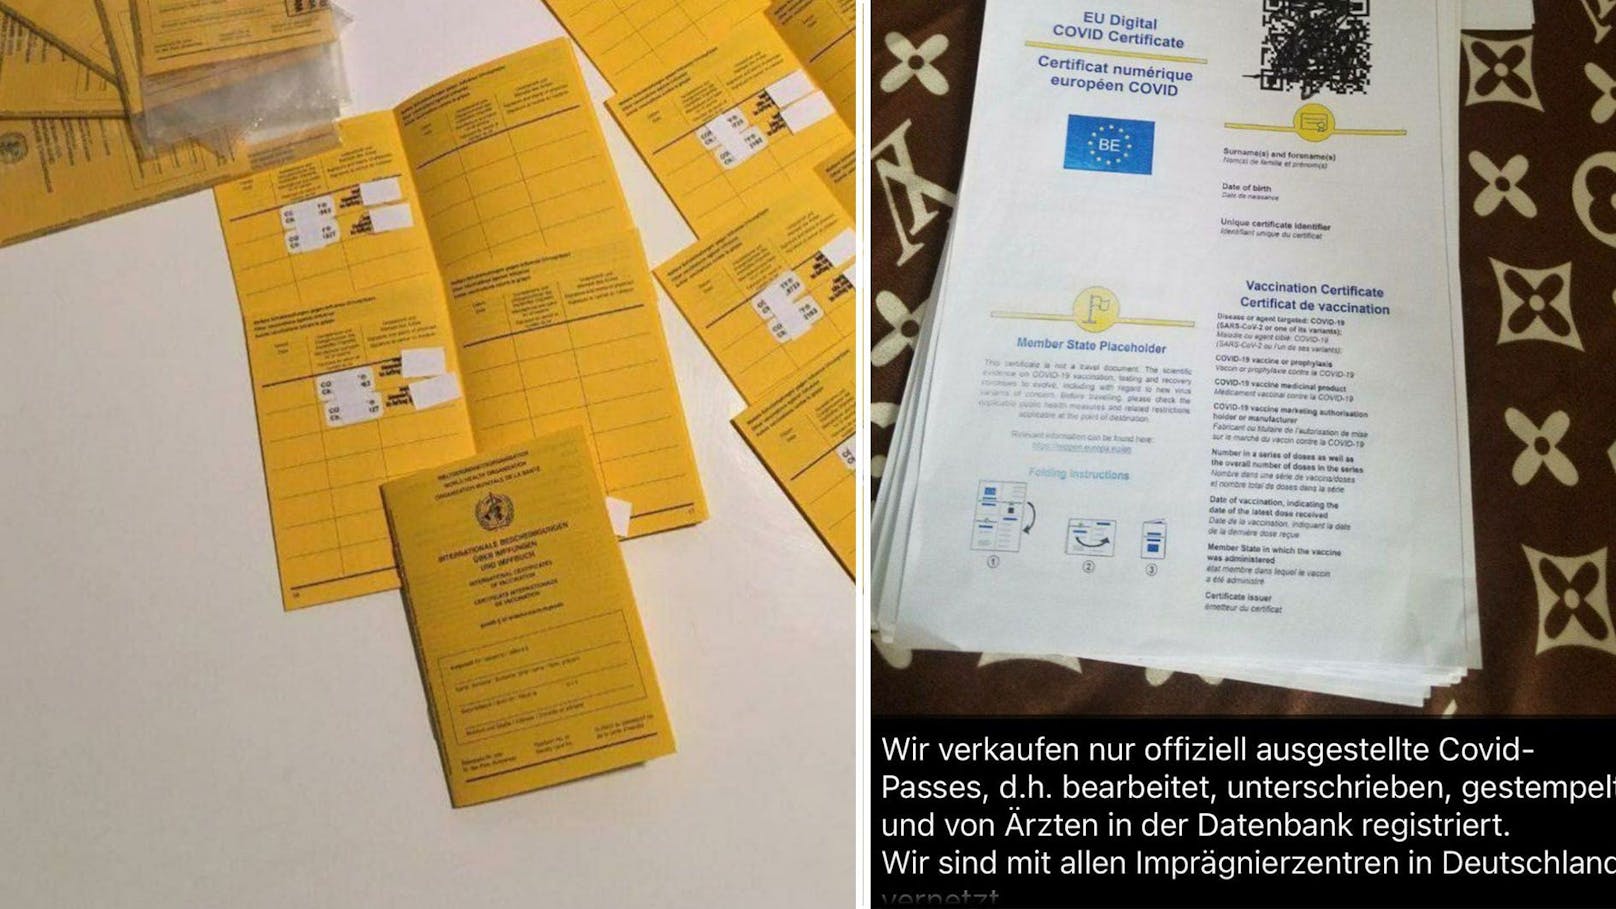 Tiroler Drogenring brachte Fake-Impfpässe in Umlauf